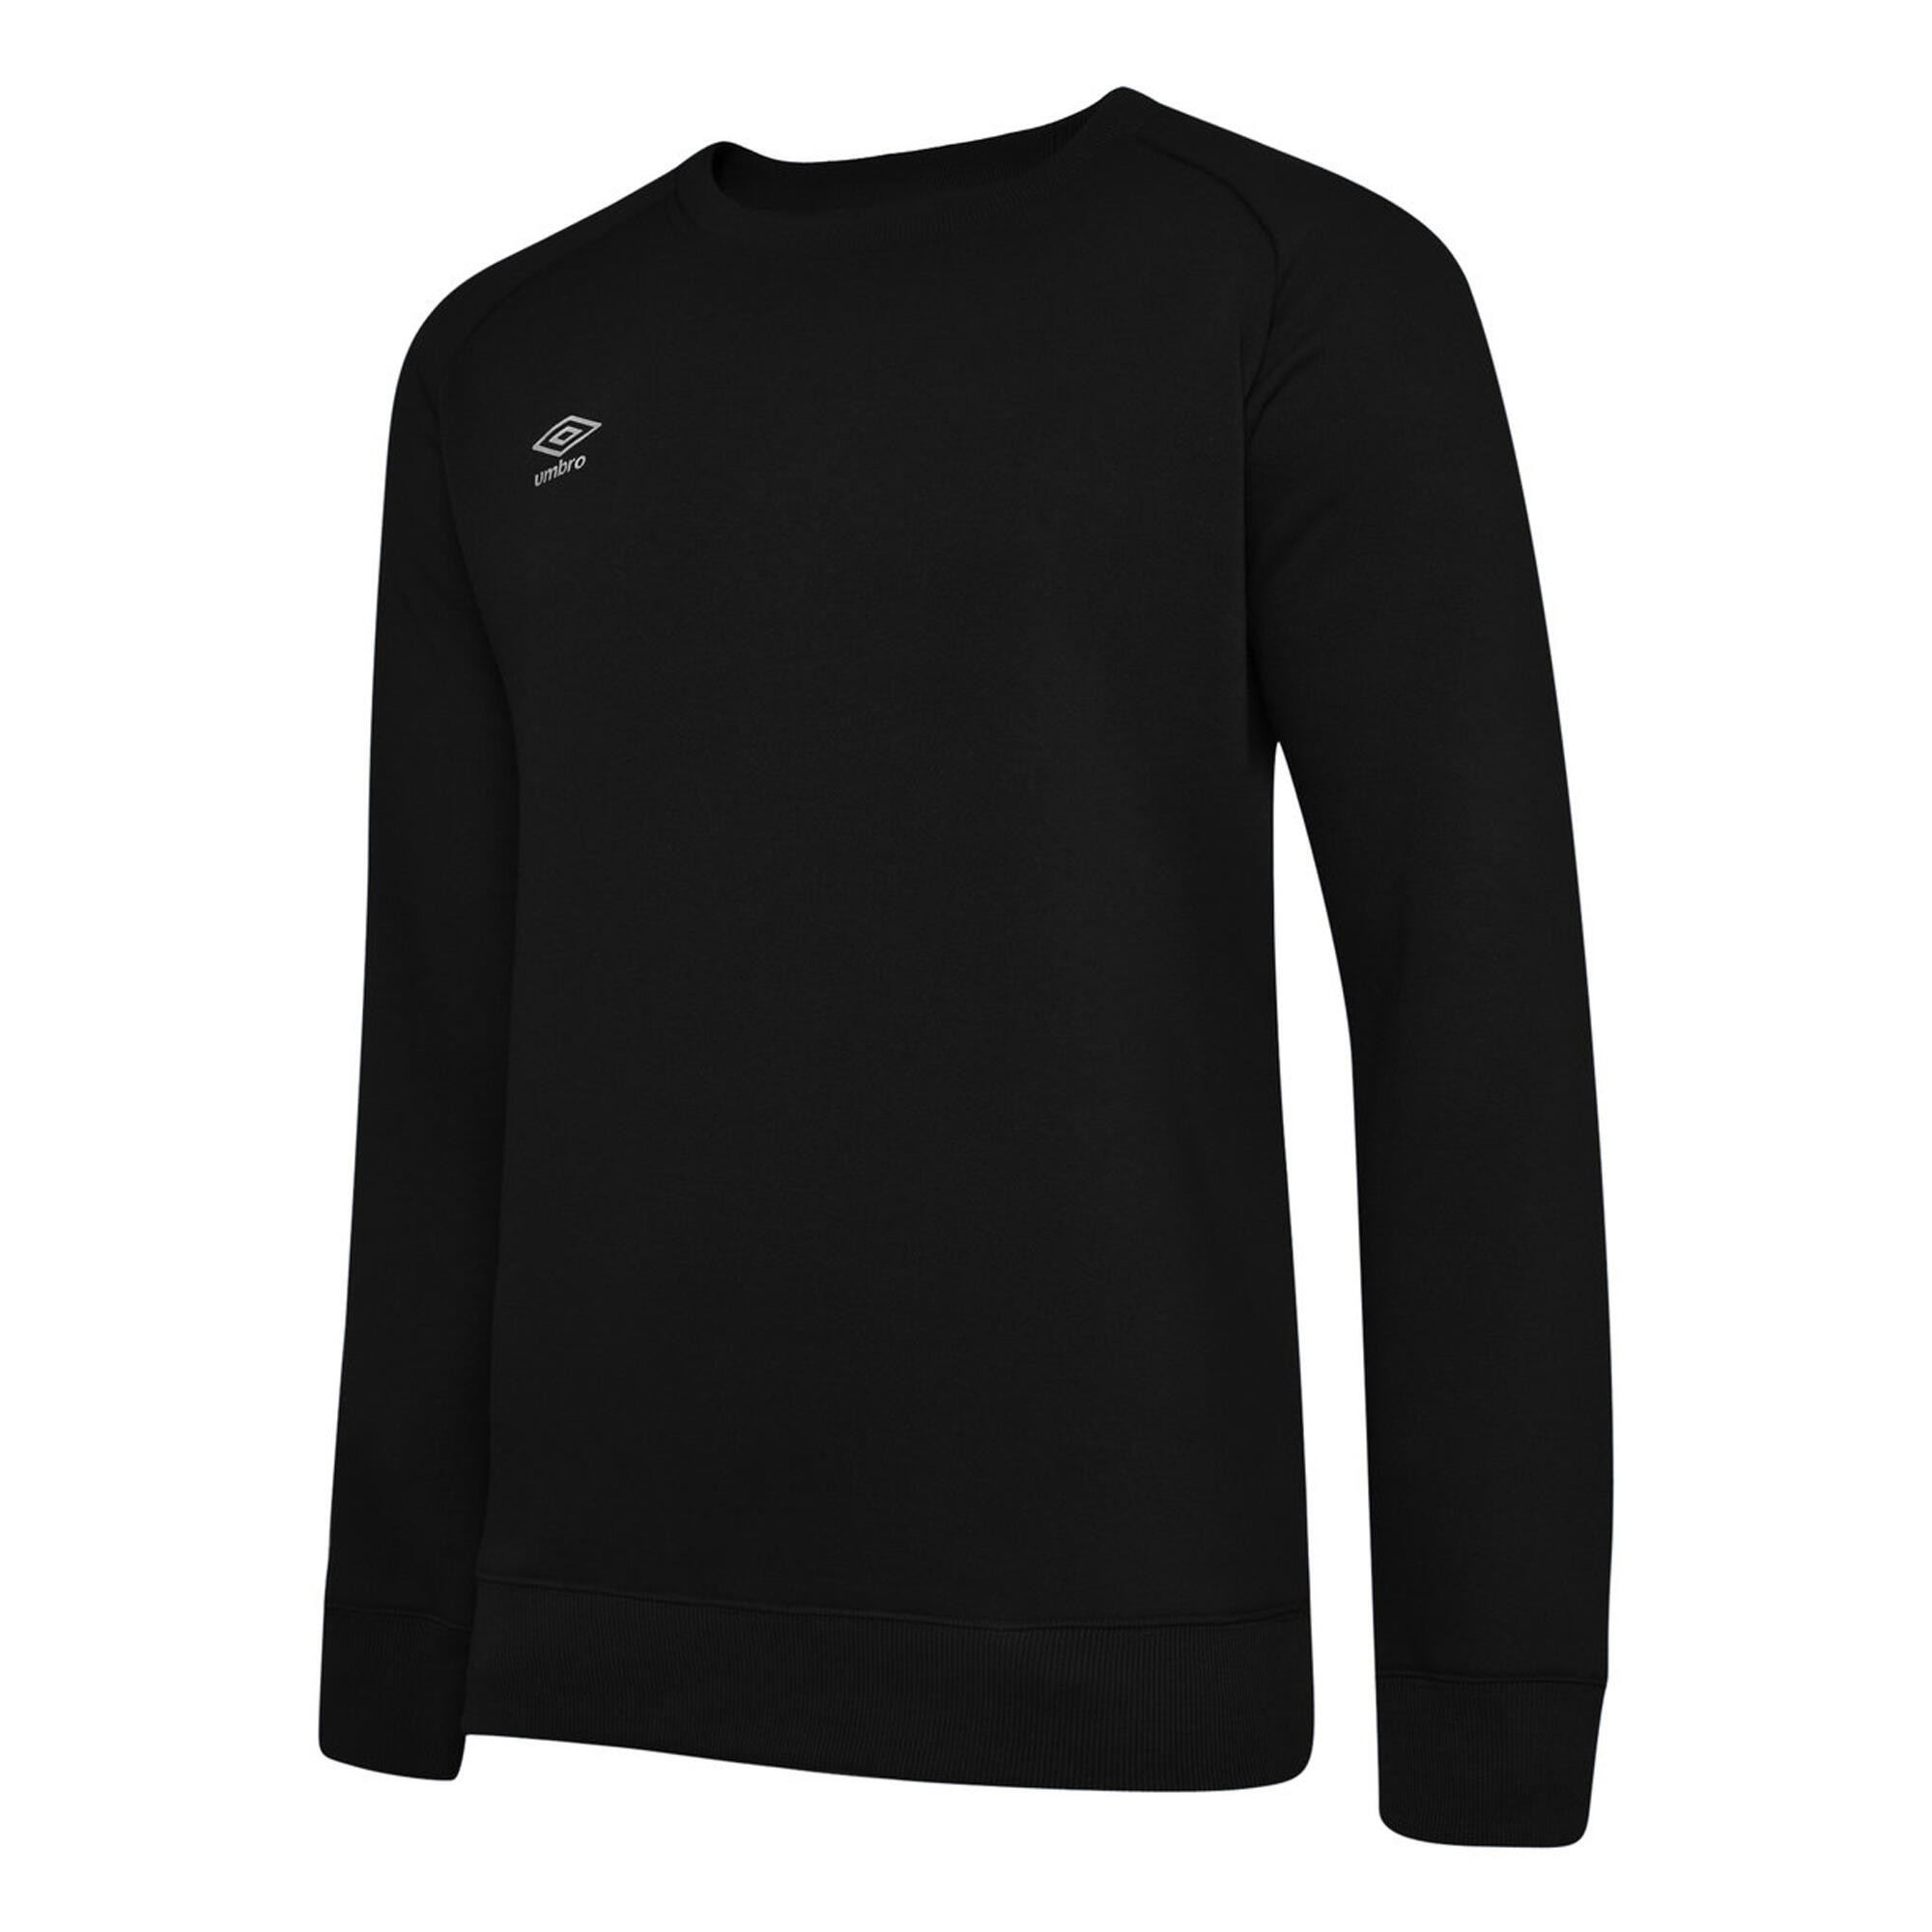 UMBRO Mens Club Leisure Sweatshirt (Black/White)